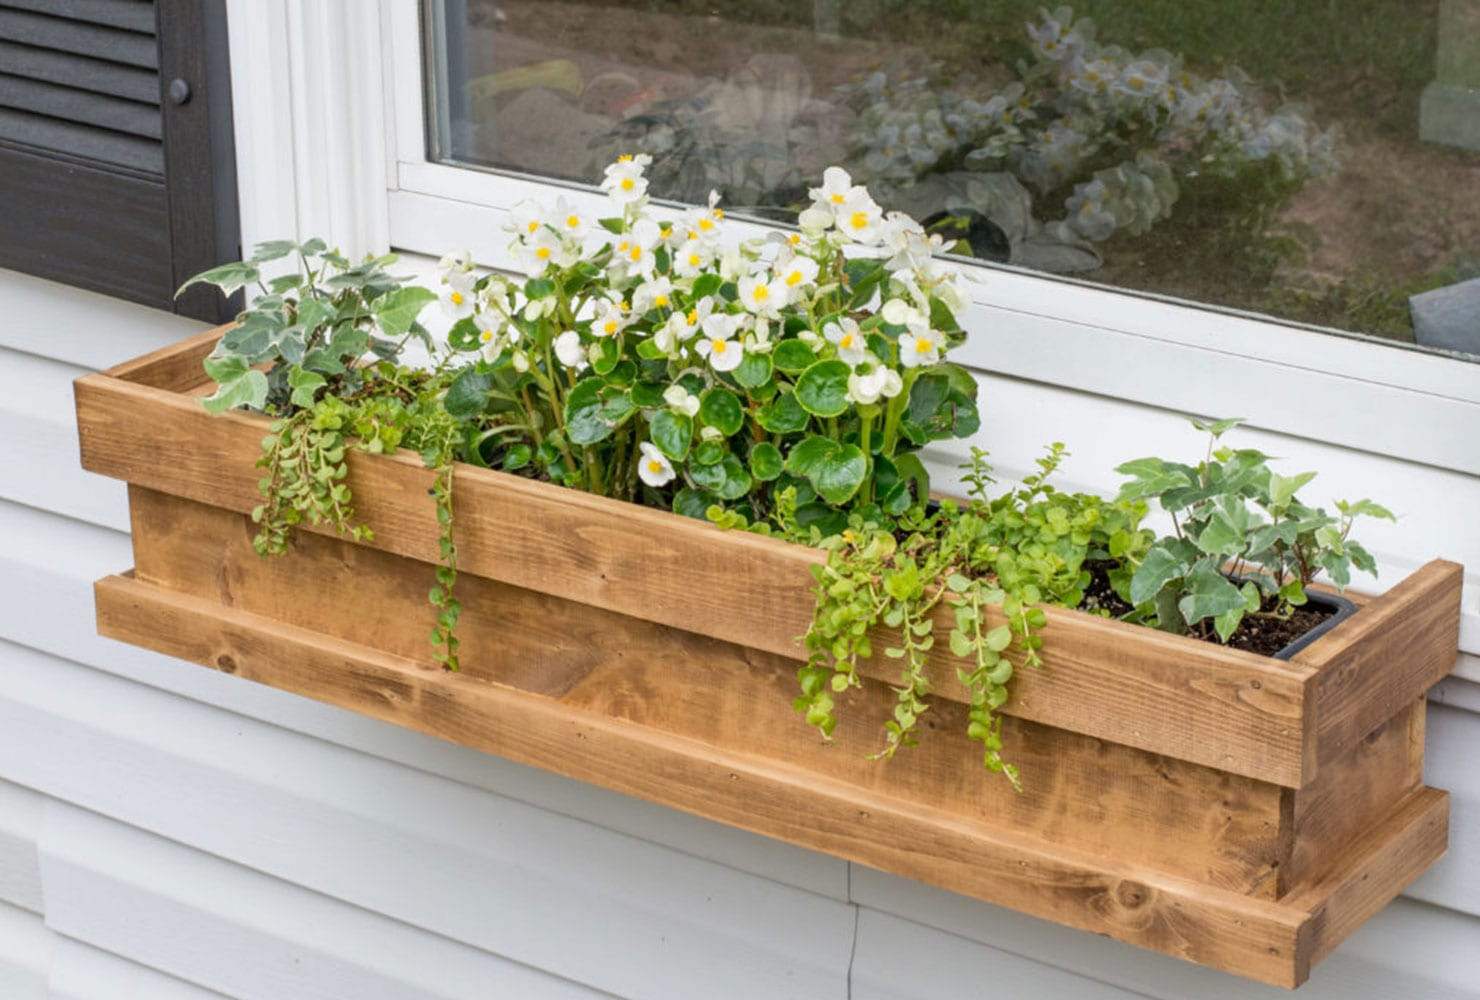 DIY Window Box Planters
 45 DIY Patio Ideas to Brighten Your Space